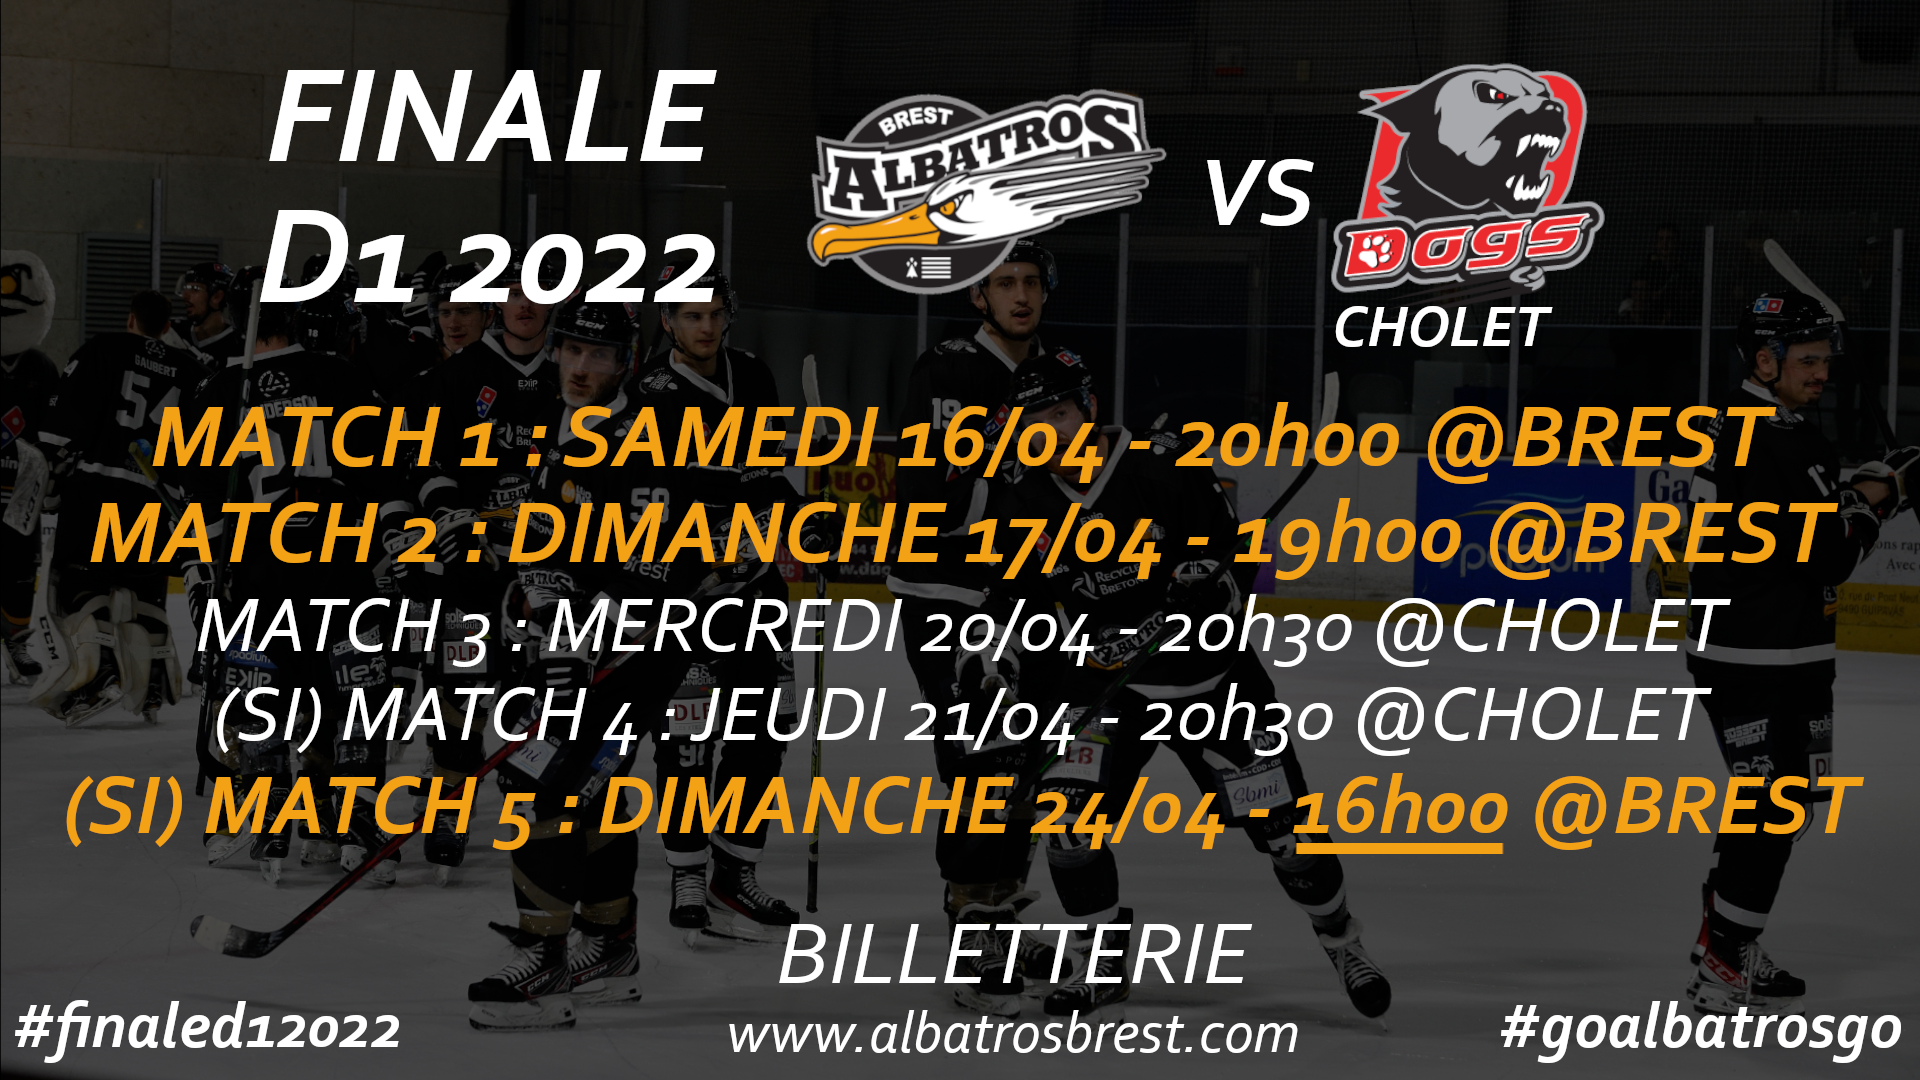 Programme finale D1 2022 Albatros-Cholet